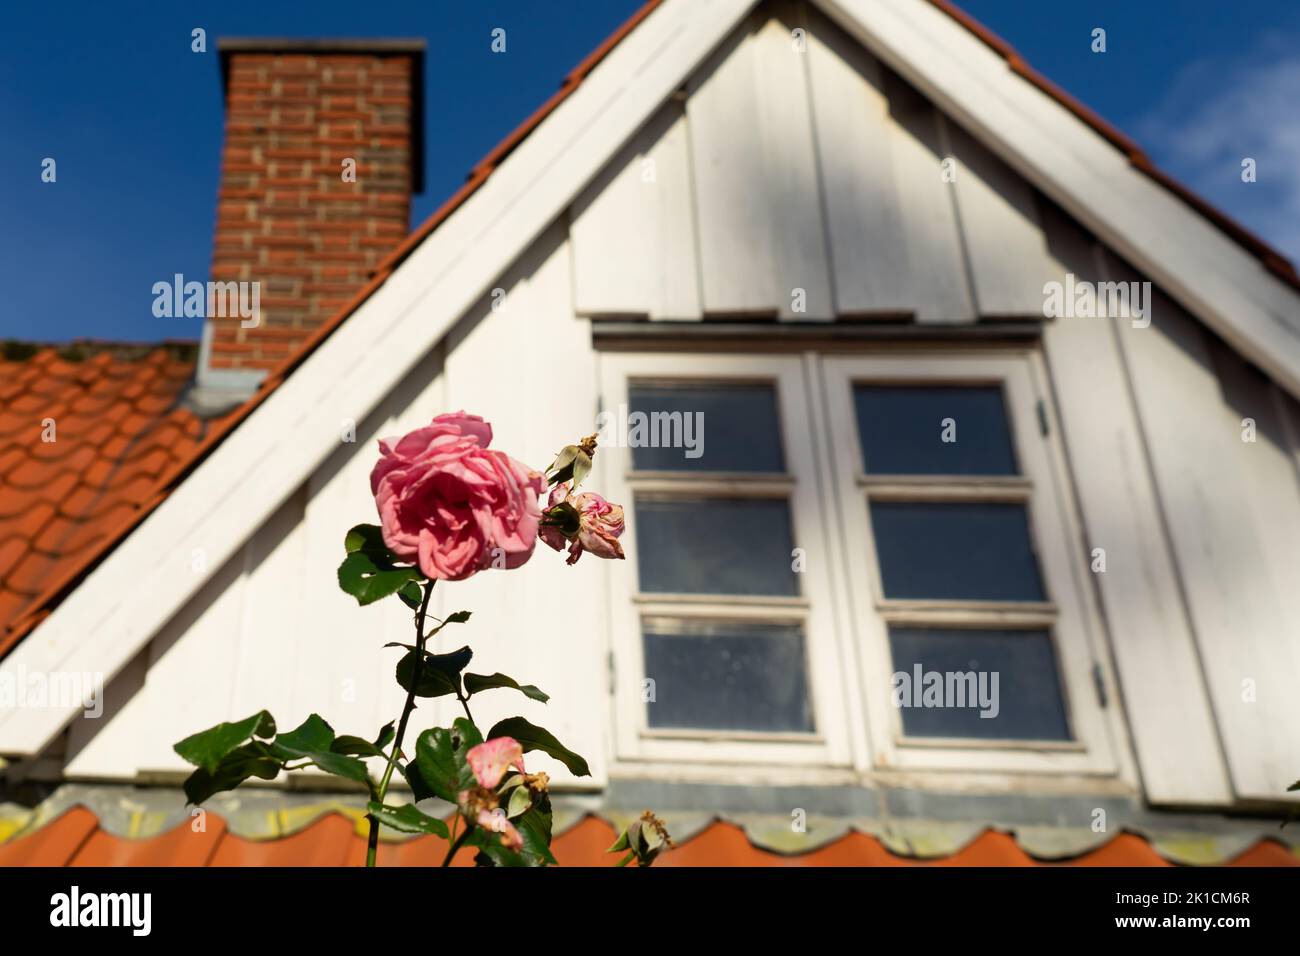 Eine welke Rose blüht vor einem Giegelfenster in einem alten dänischen Bauernhaus Stockfoto